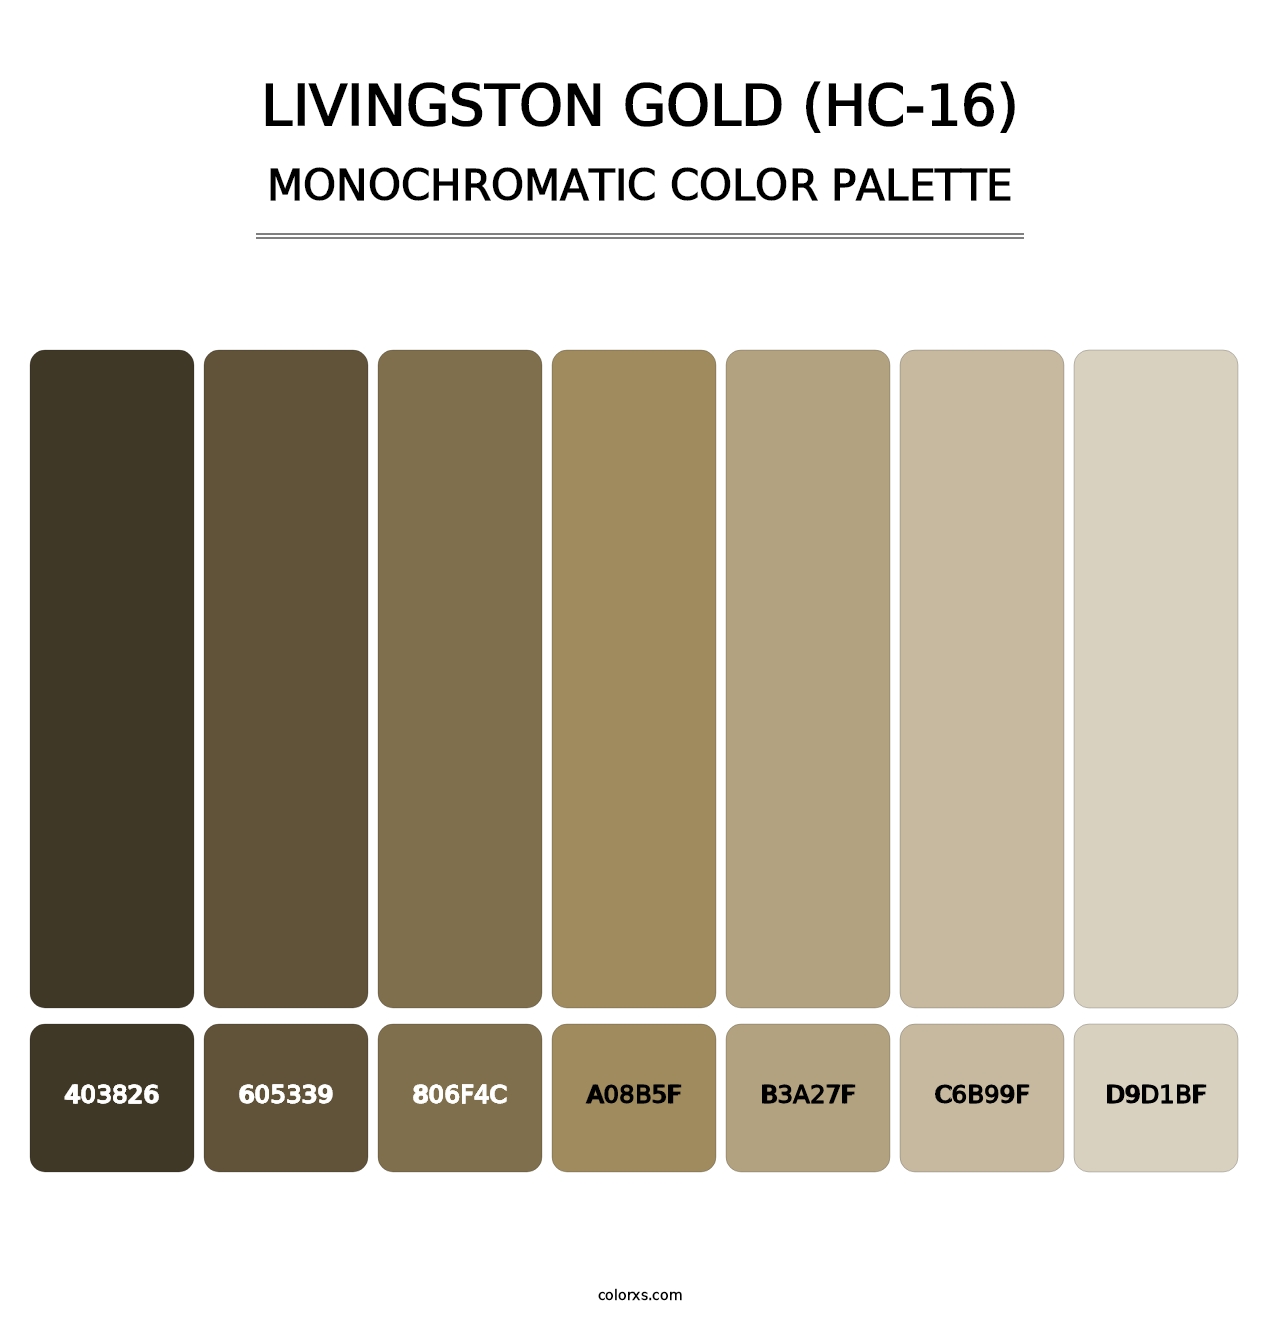 Livingston Gold (HC-16) - Monochromatic Color Palette